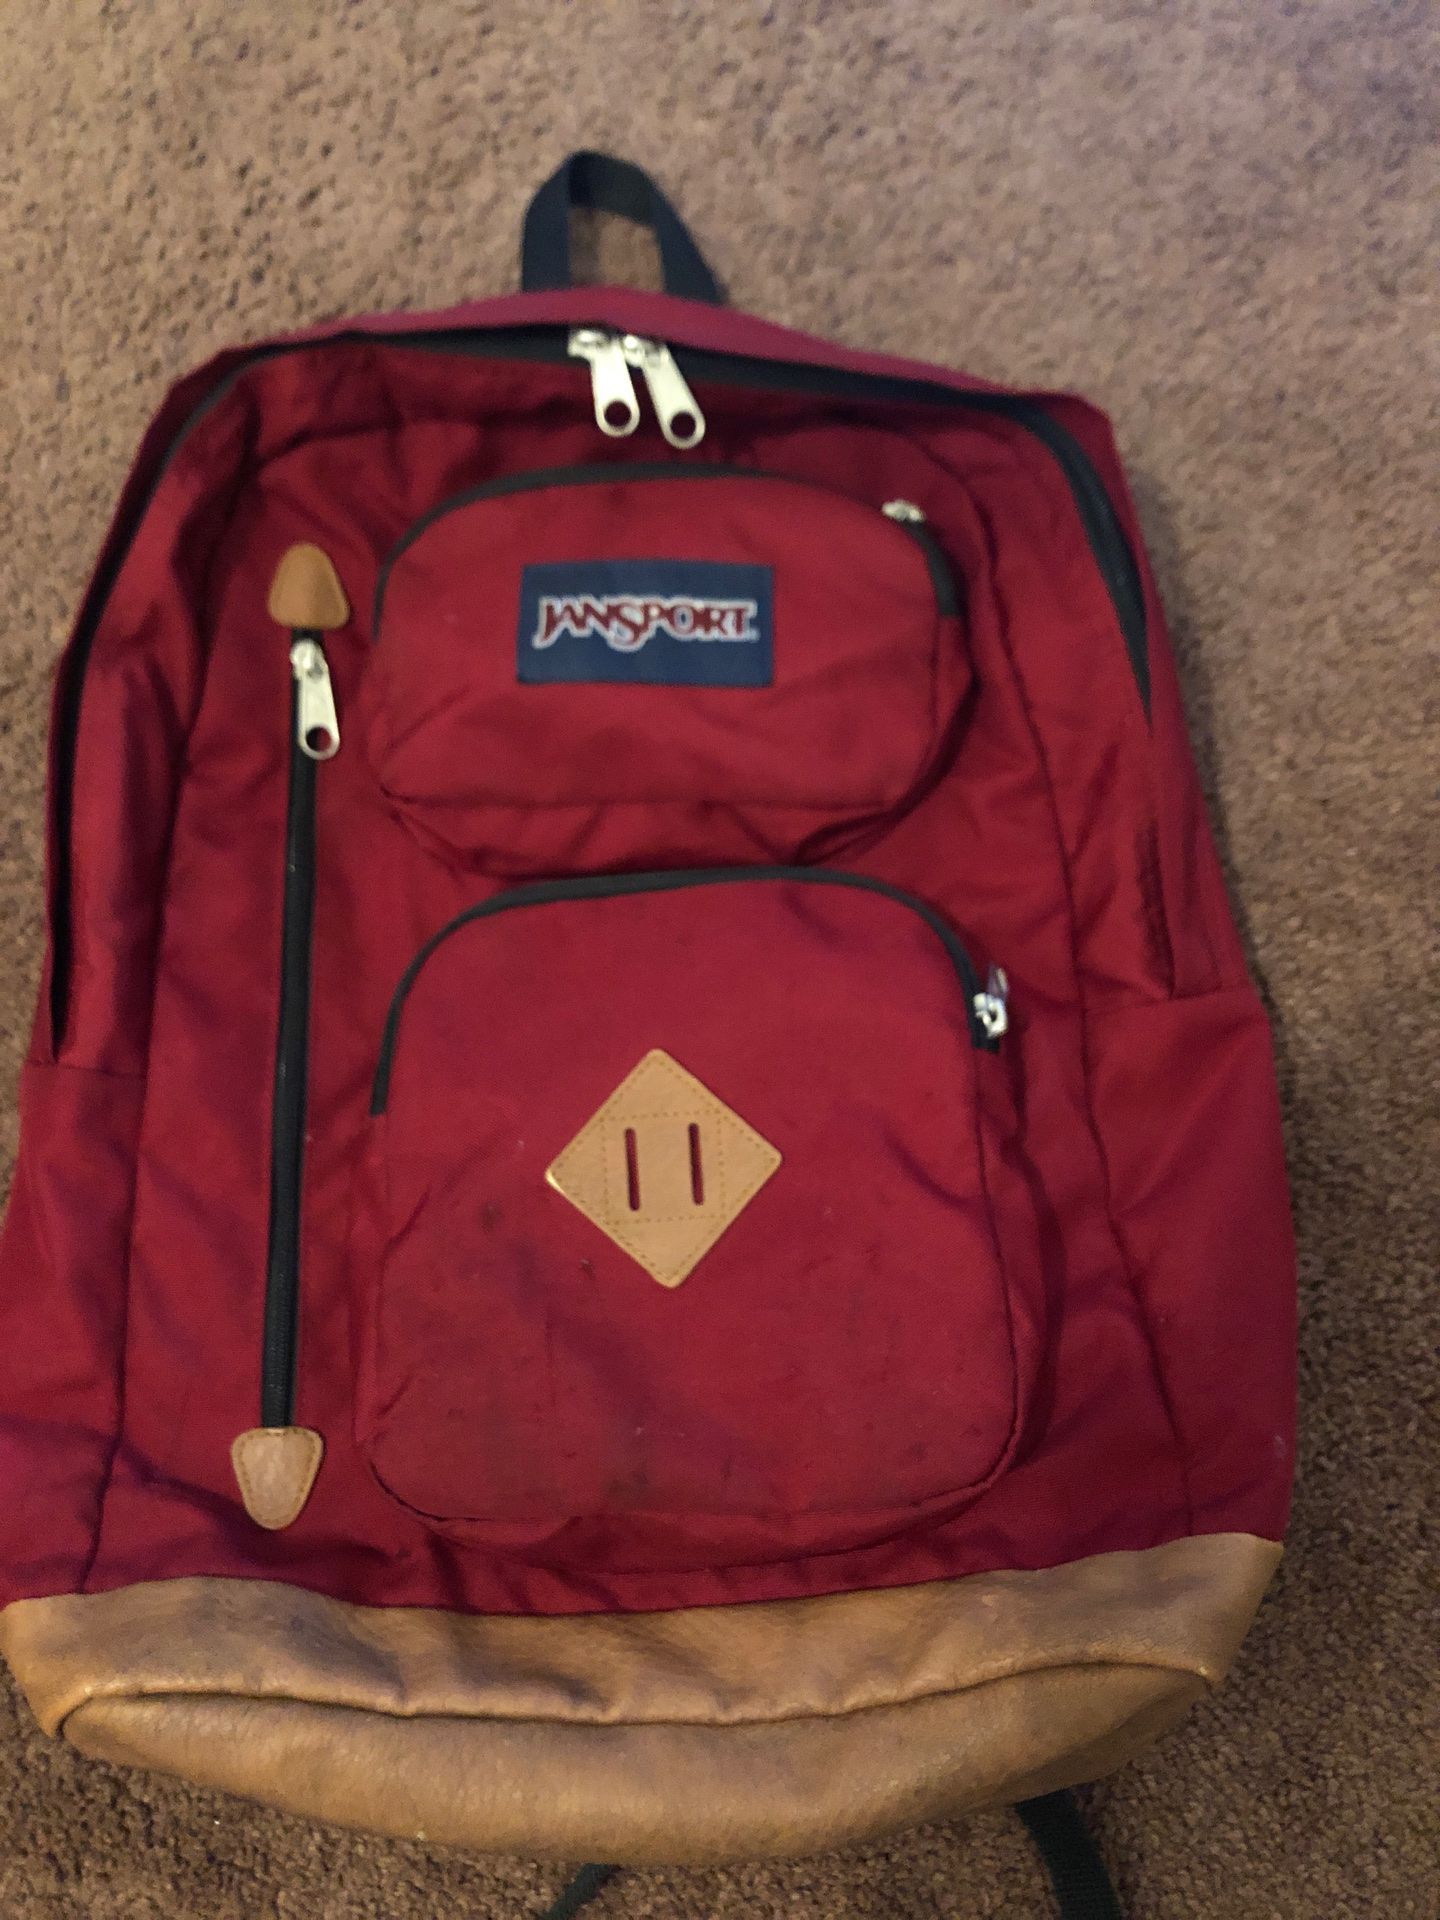 Jansport waterproof backpack